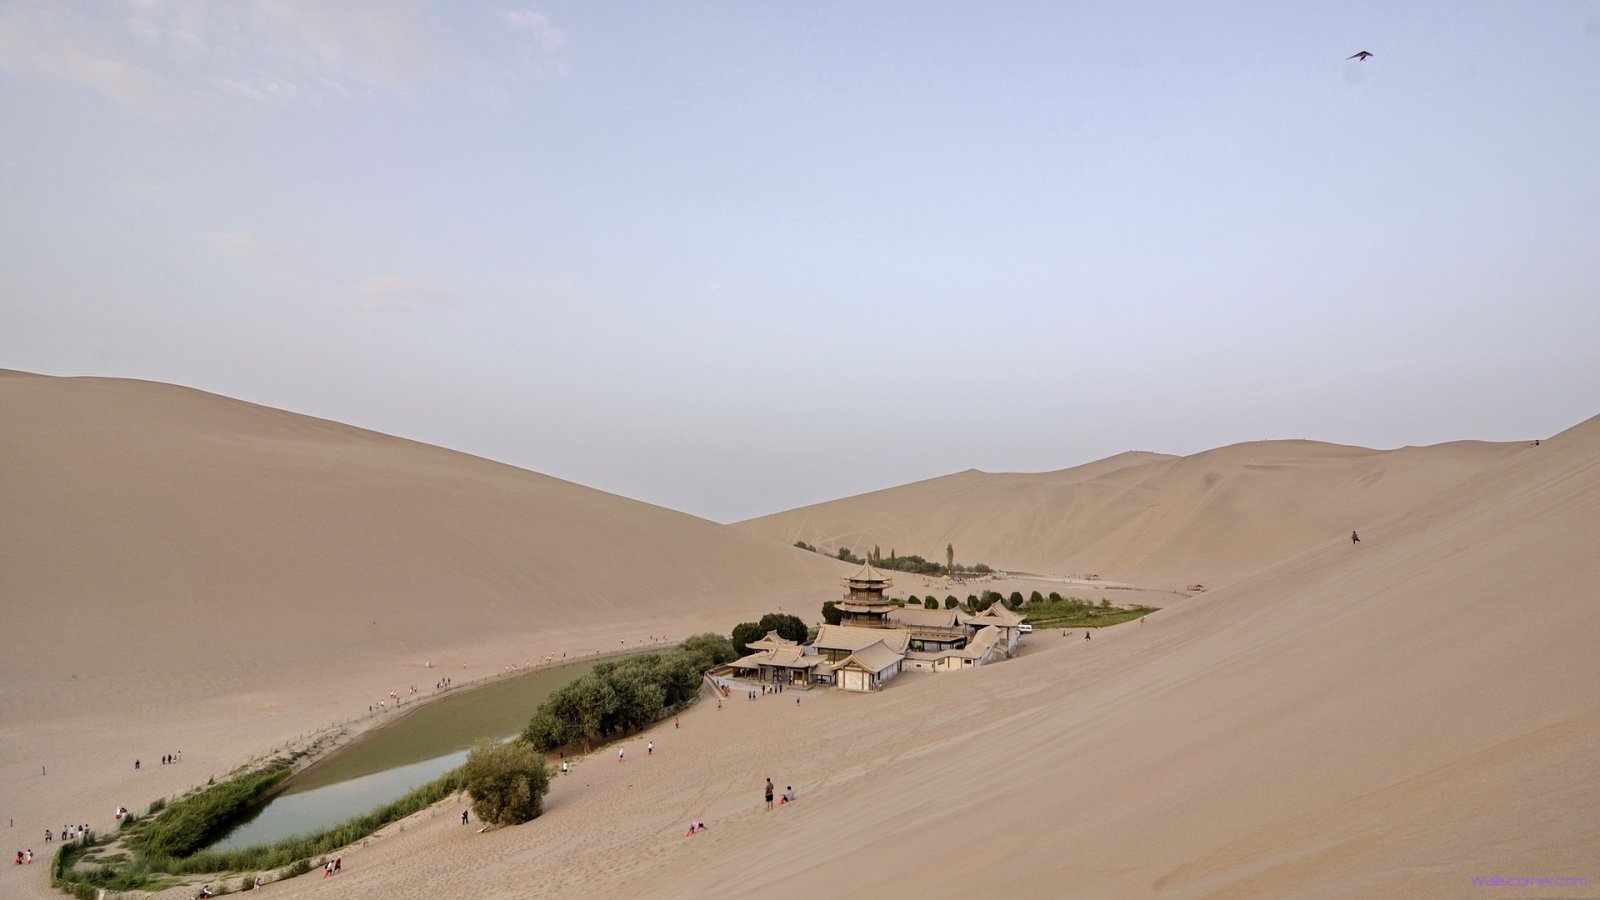 desert oasis 1080p hd wallpaper beauty desert oasis 1080p hd wallpaper